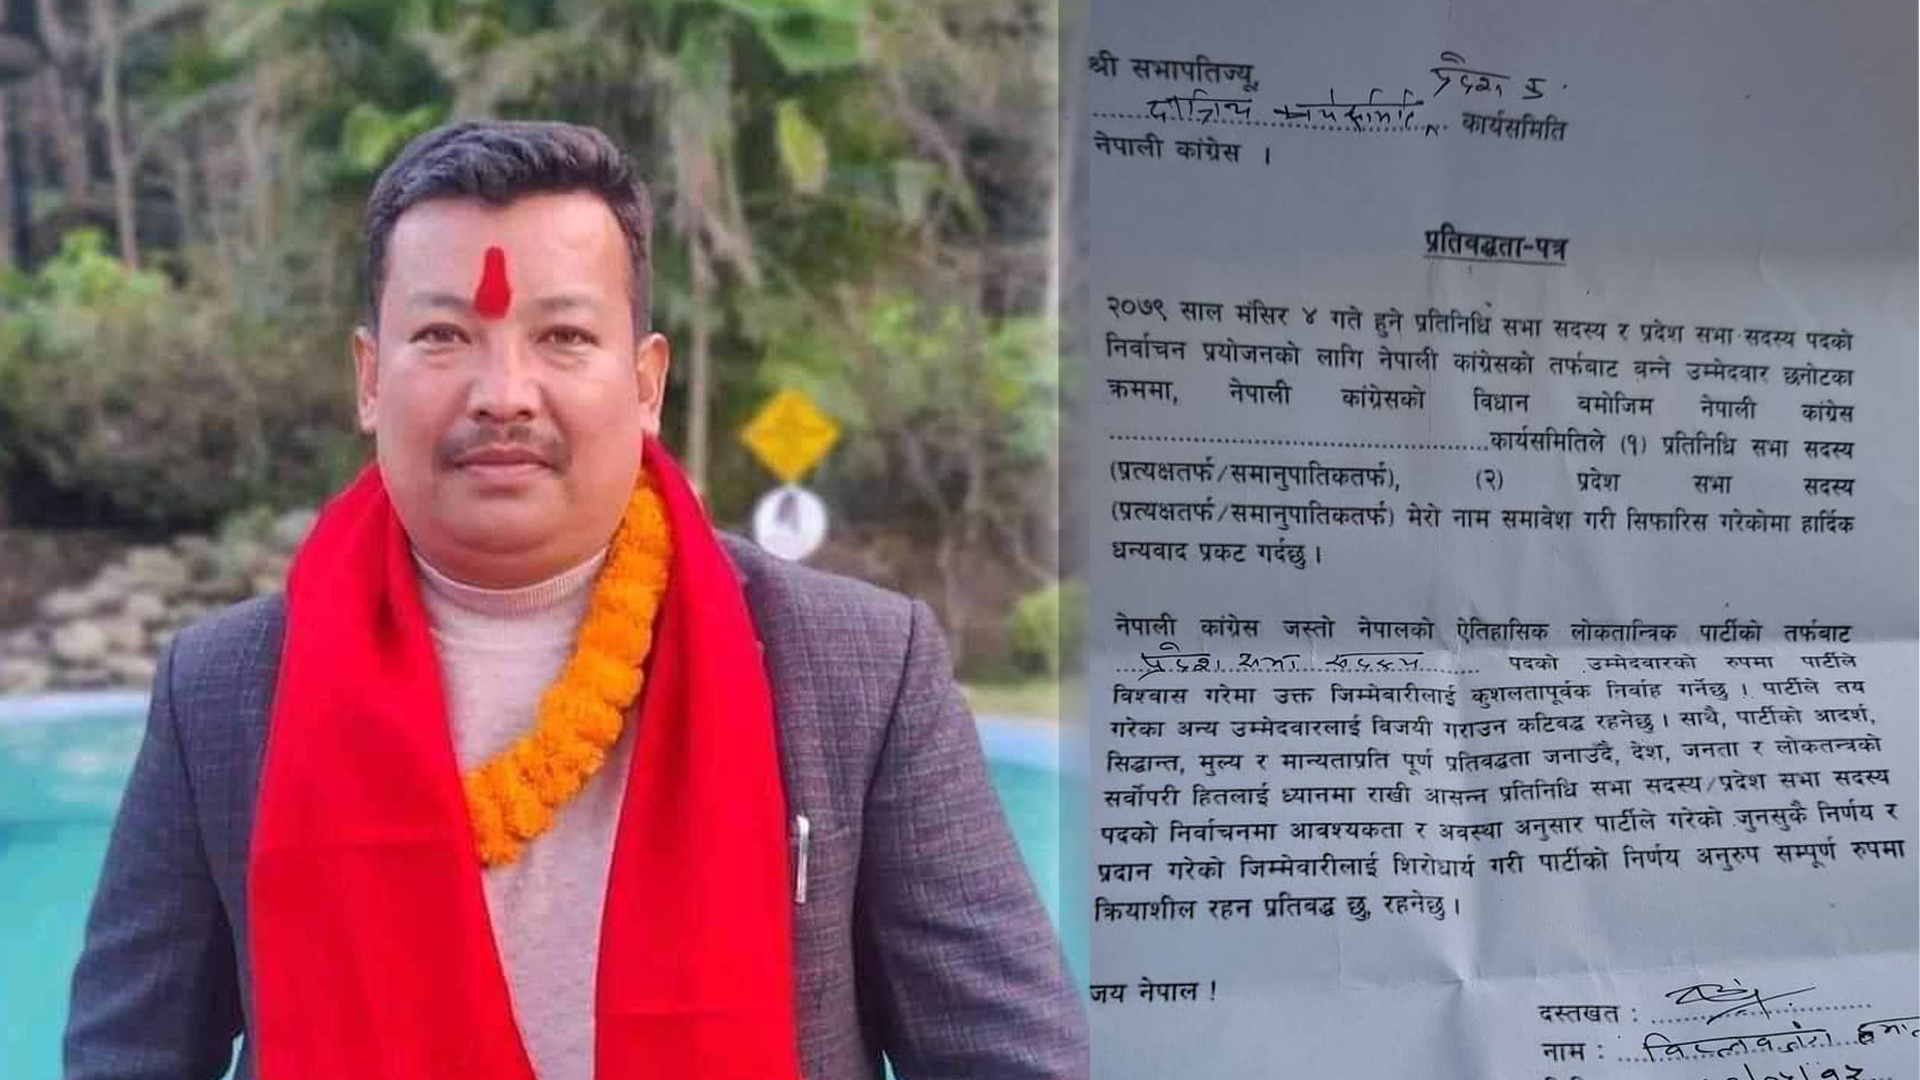 नेपाली काँग्रेसका नेता हमालले प्रदेश सभा विर्वाचनमा पर्वतबाट उम्मेद्वारी दिने